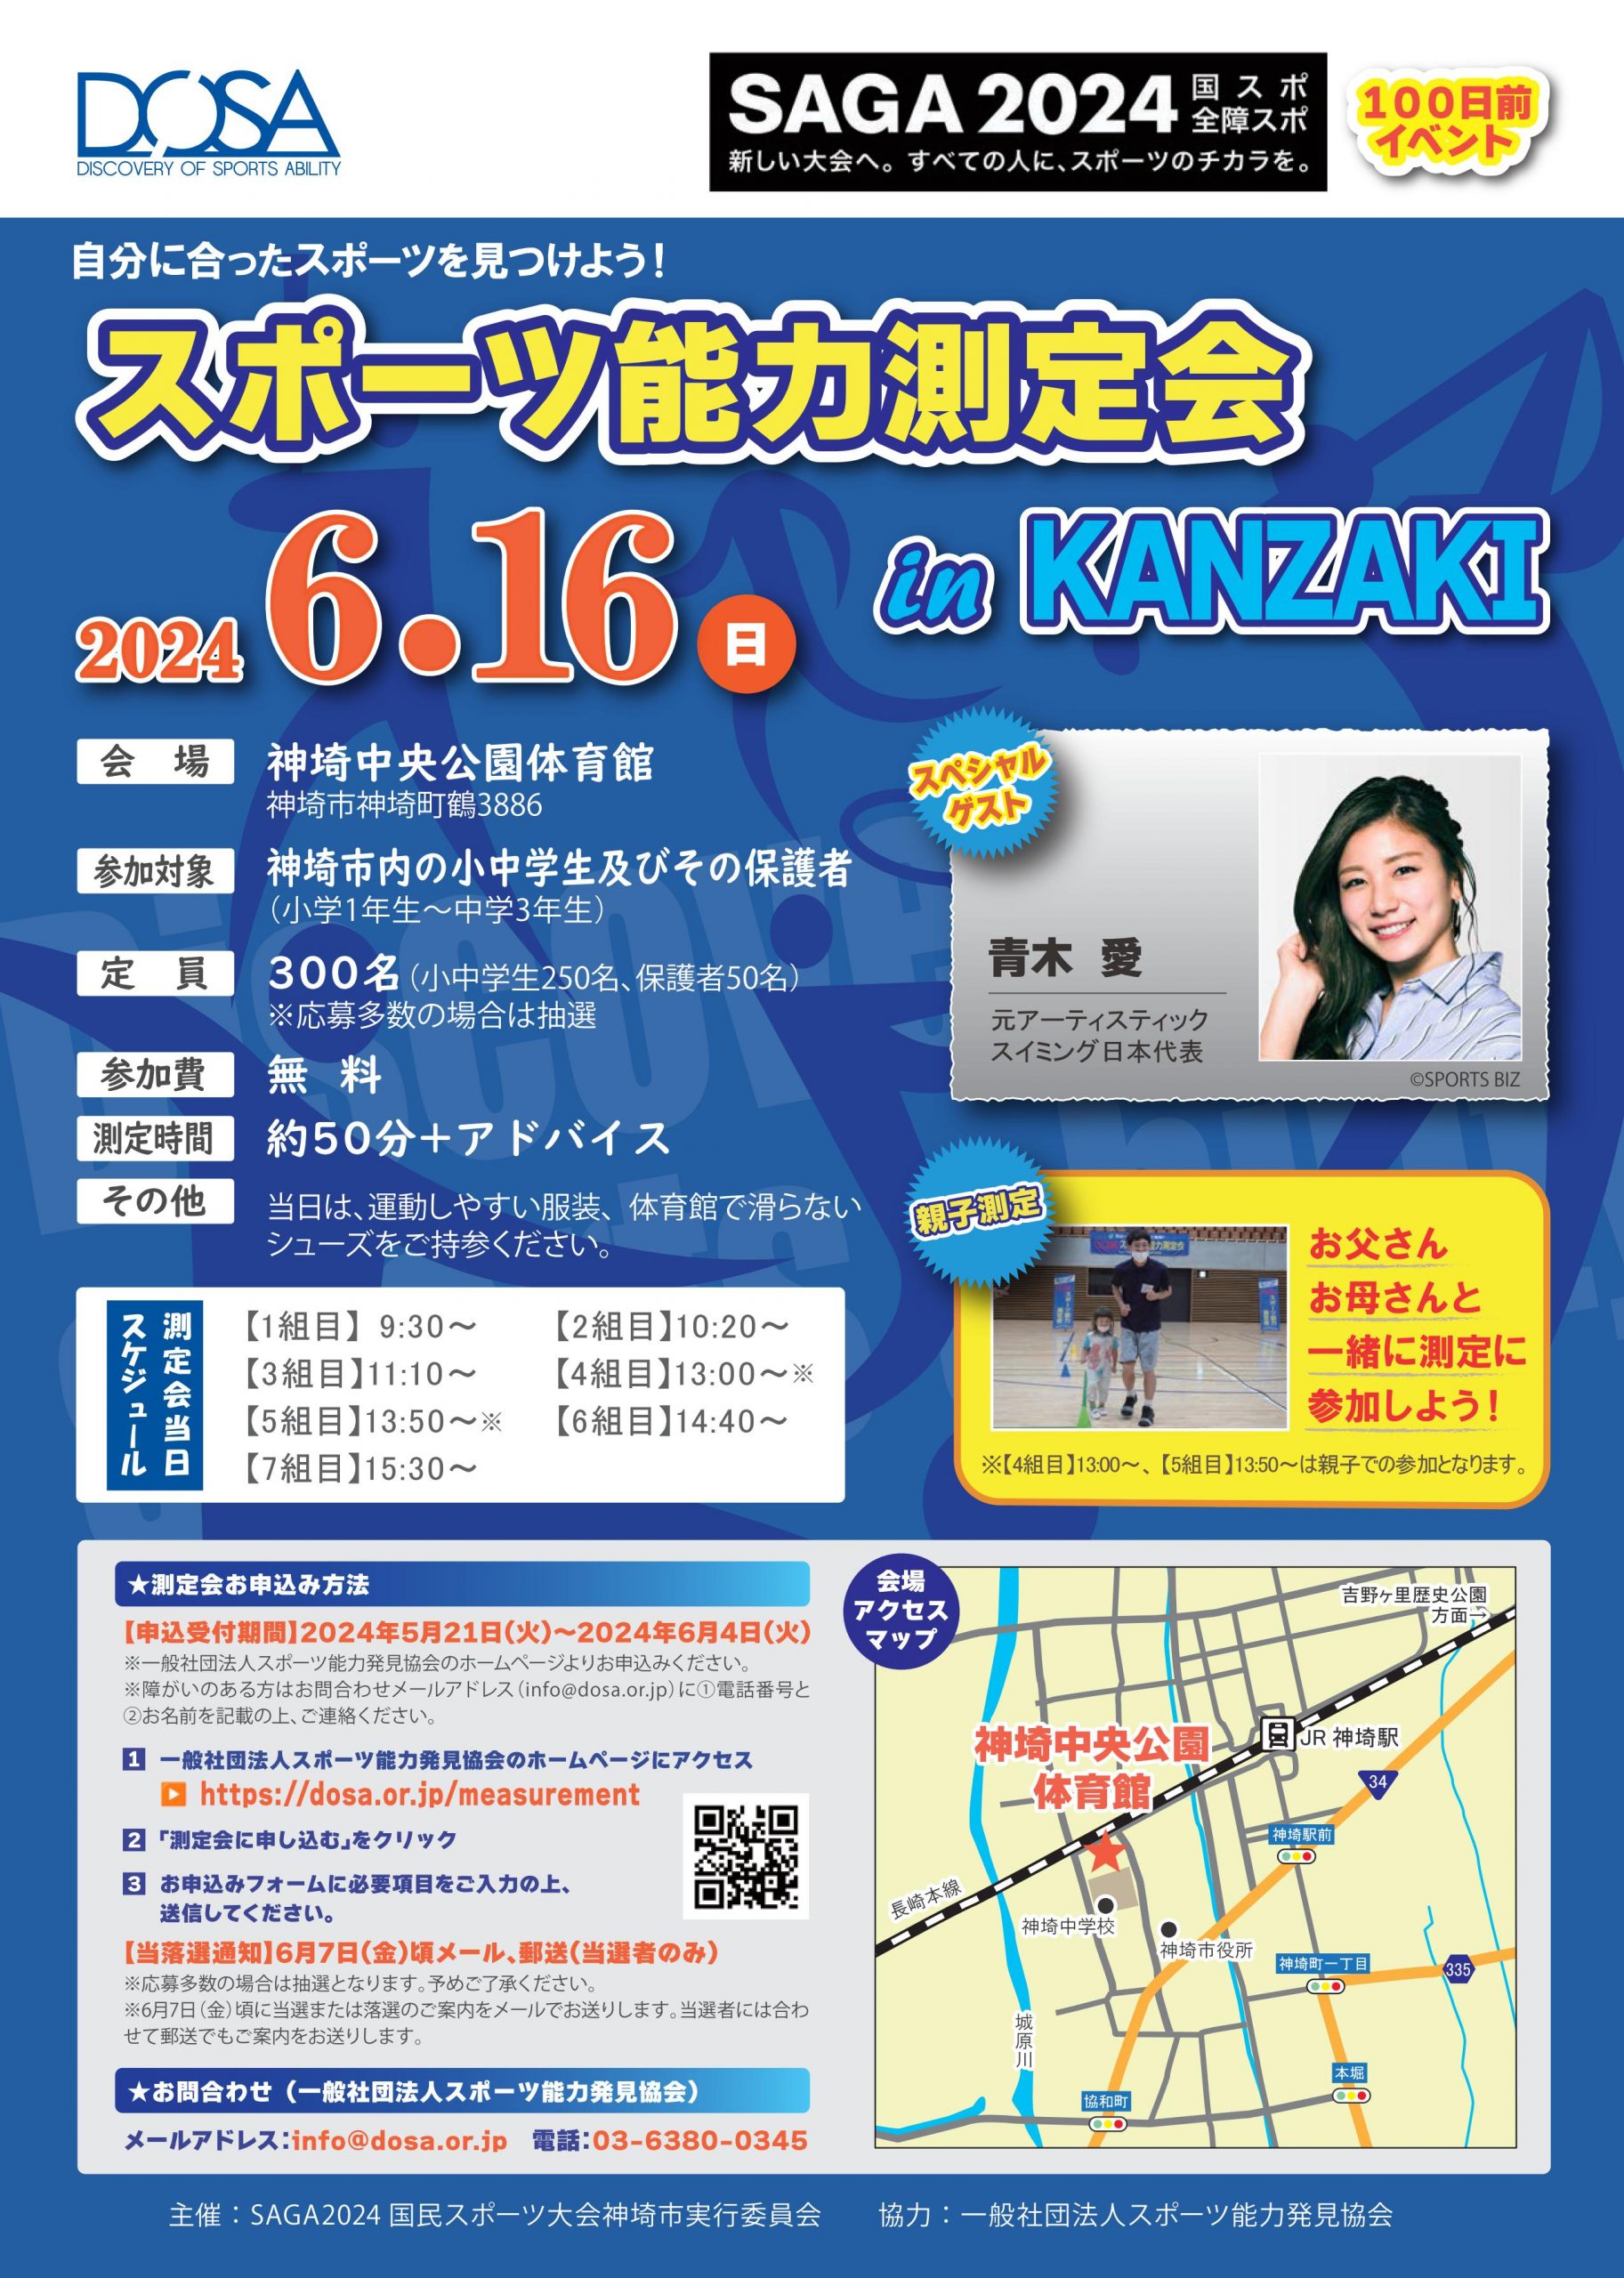 2024/6/16 スポーツ能力測定会 in KANZAKIを開催します。